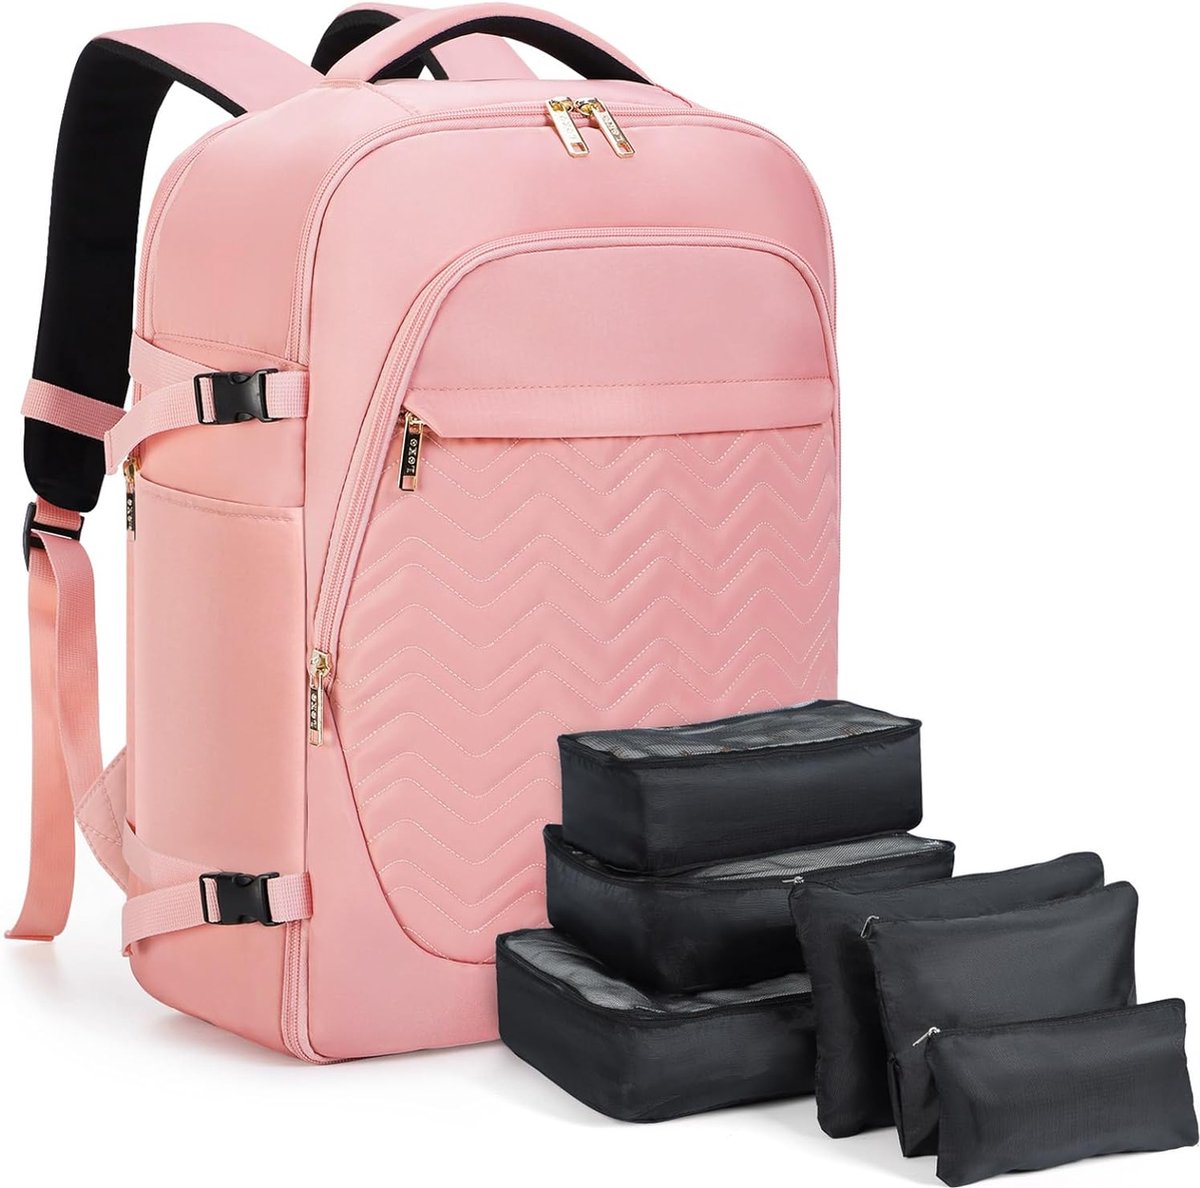 Grote rugzak, handbagage voor dames, 15,6 inch, laptoprugzak, reisrugzak, wandelrugzak met 6-delige kledingtassen voor vakantie, business, werk, reizen, roze